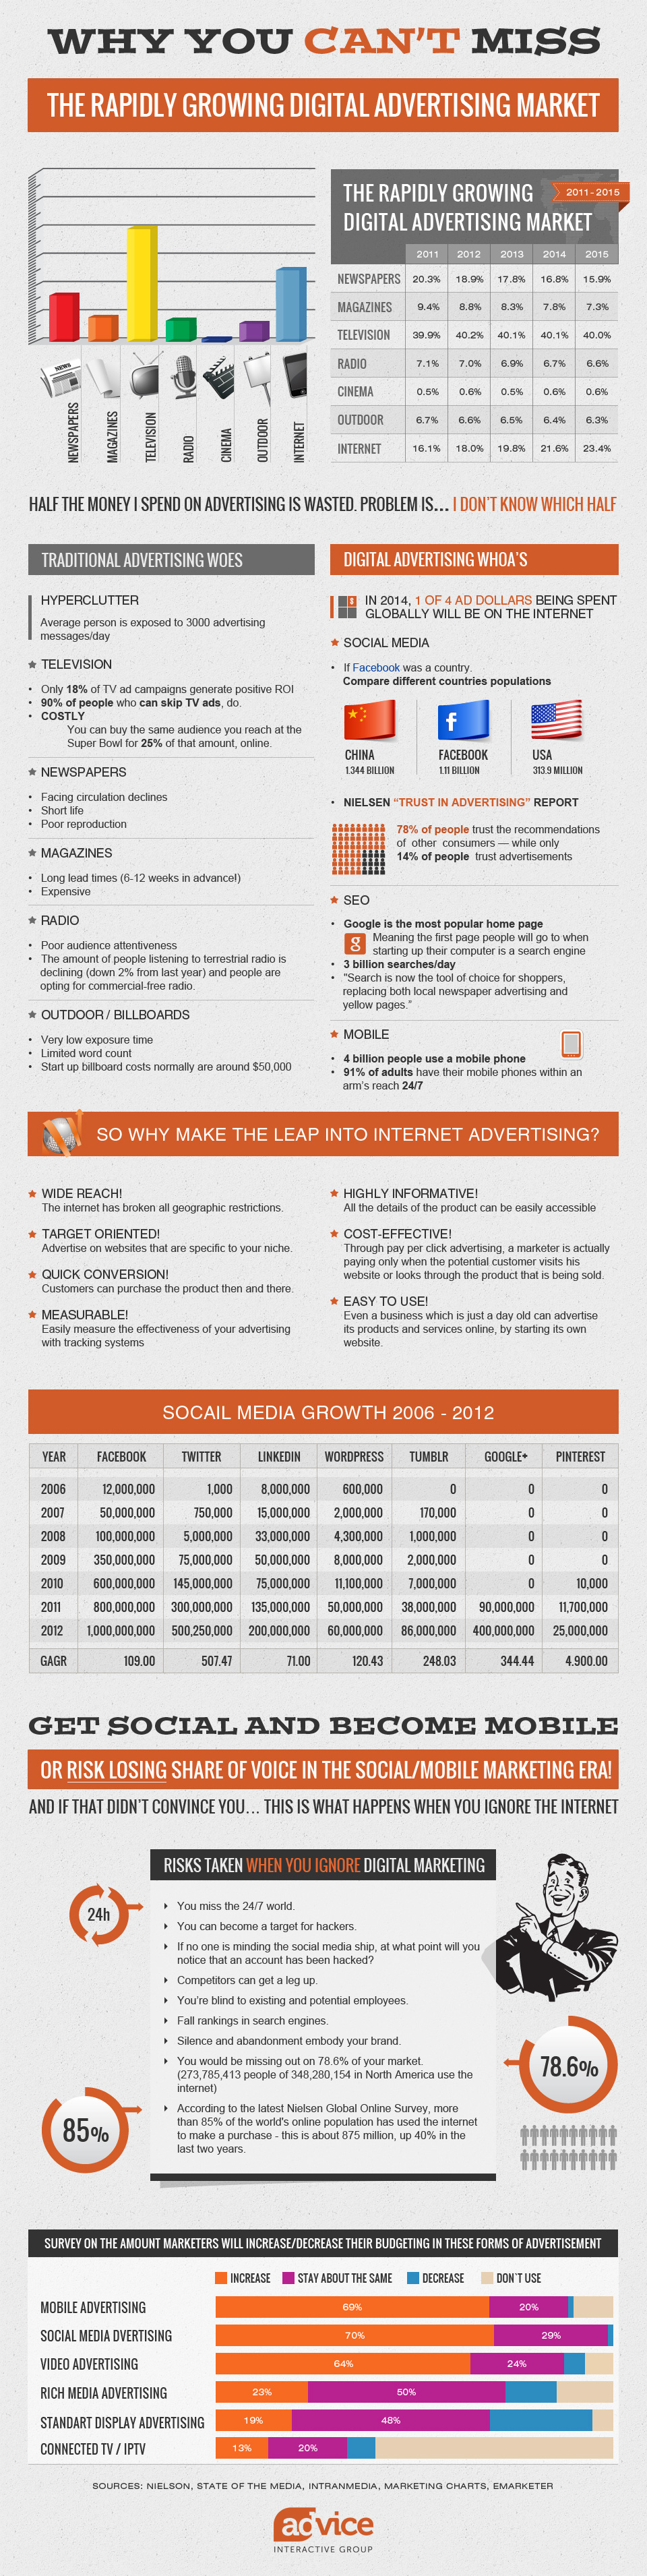 Online-Marketing Fakten und Wachstum bis 2015